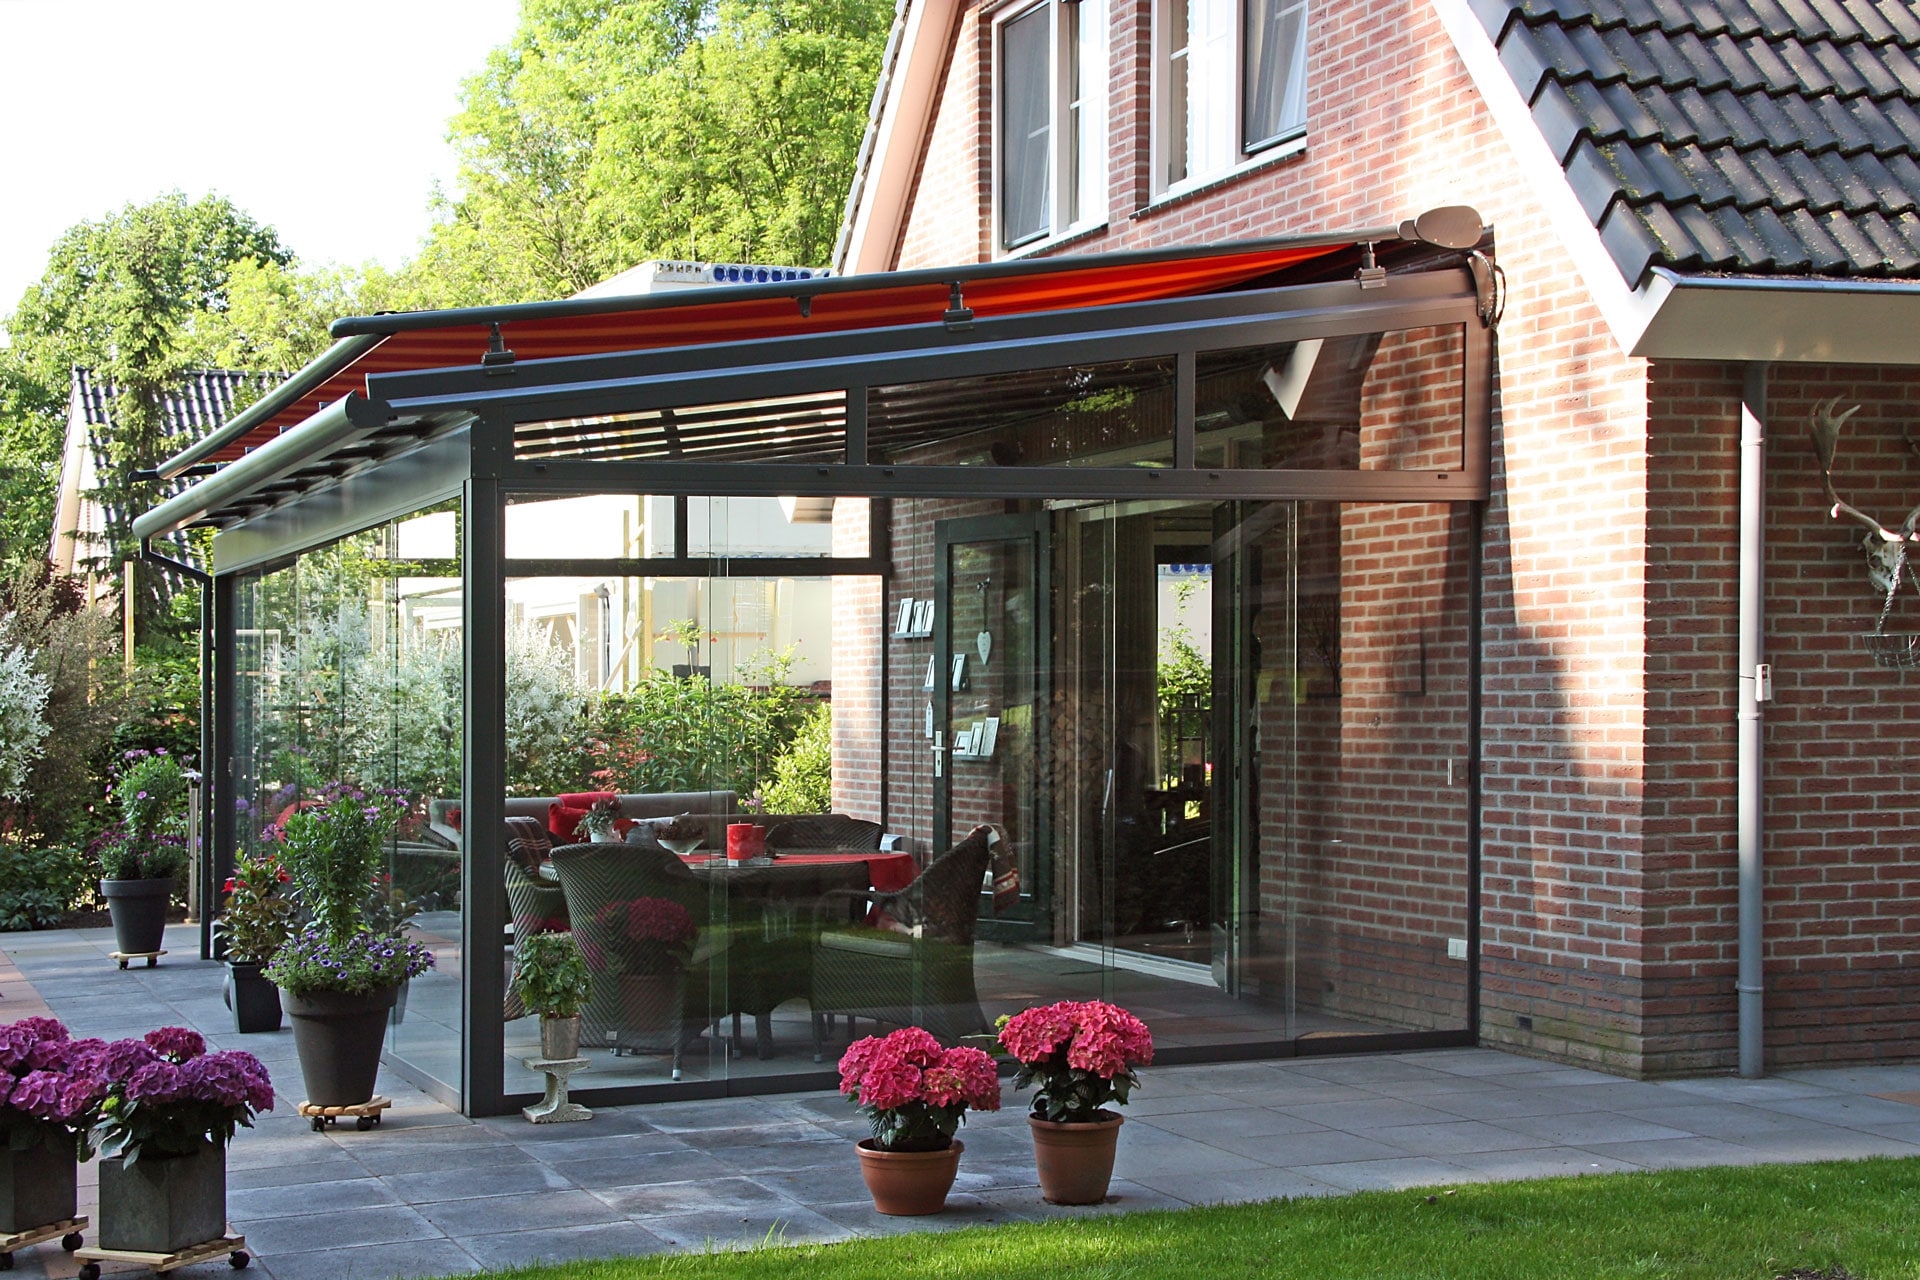 HS 03 | Sommergarten-Markise als Hitzeschutz bei direkter Sonneneinstrahlung auf Glasdach | Svoboda